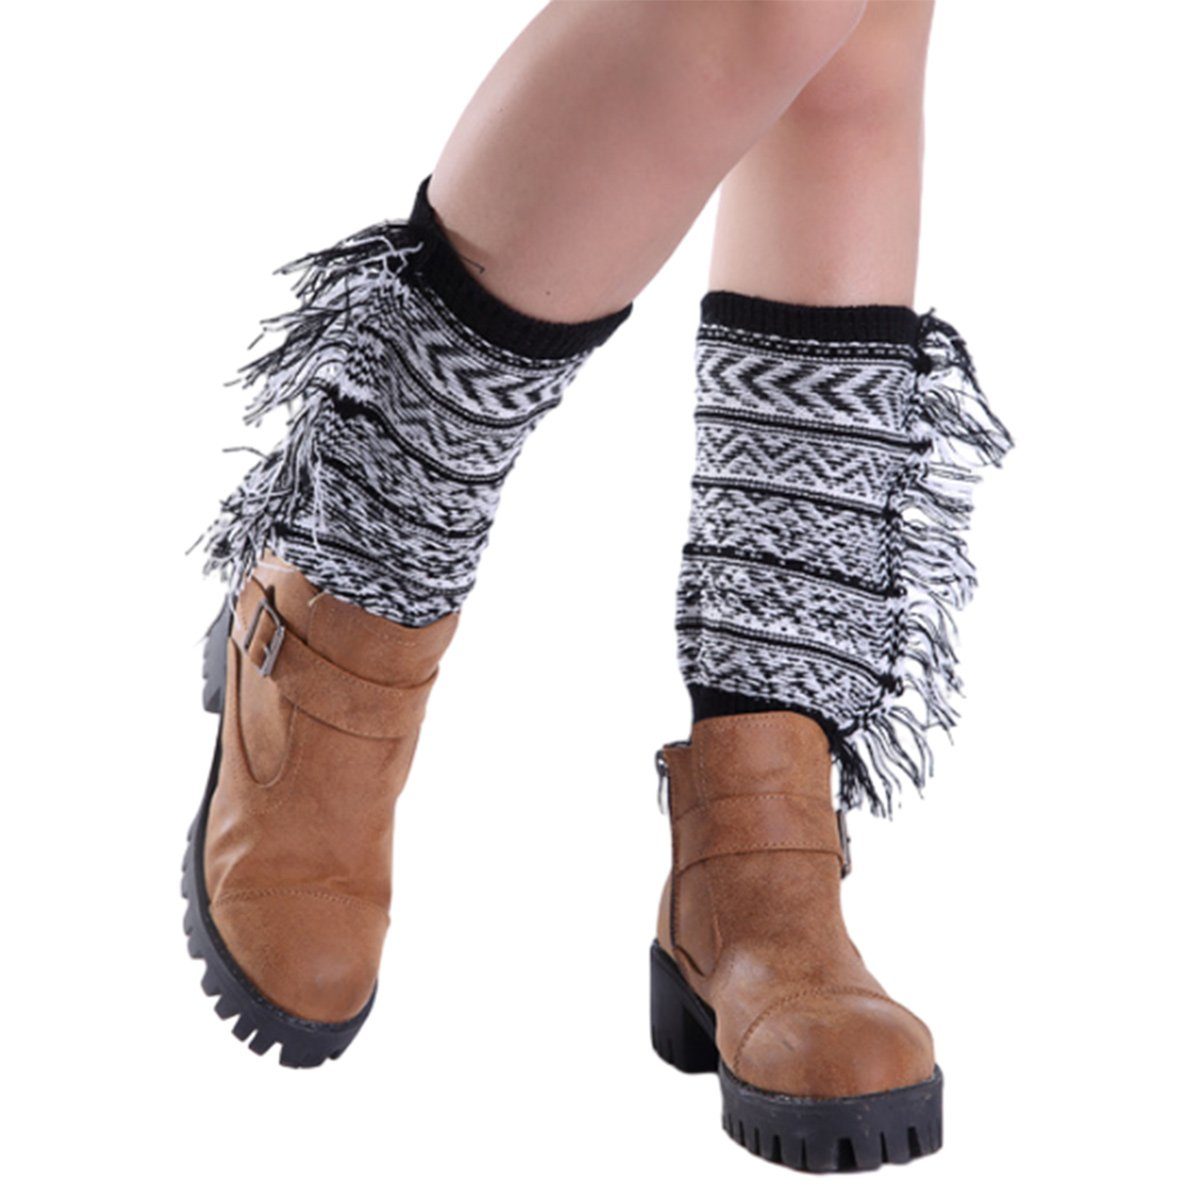 Jormftte Beinstulpen Damen Strick-Beinstulpen Stiefelstulpen Socken Kurze Stiefelsocken Schwarz | Beinstulpen